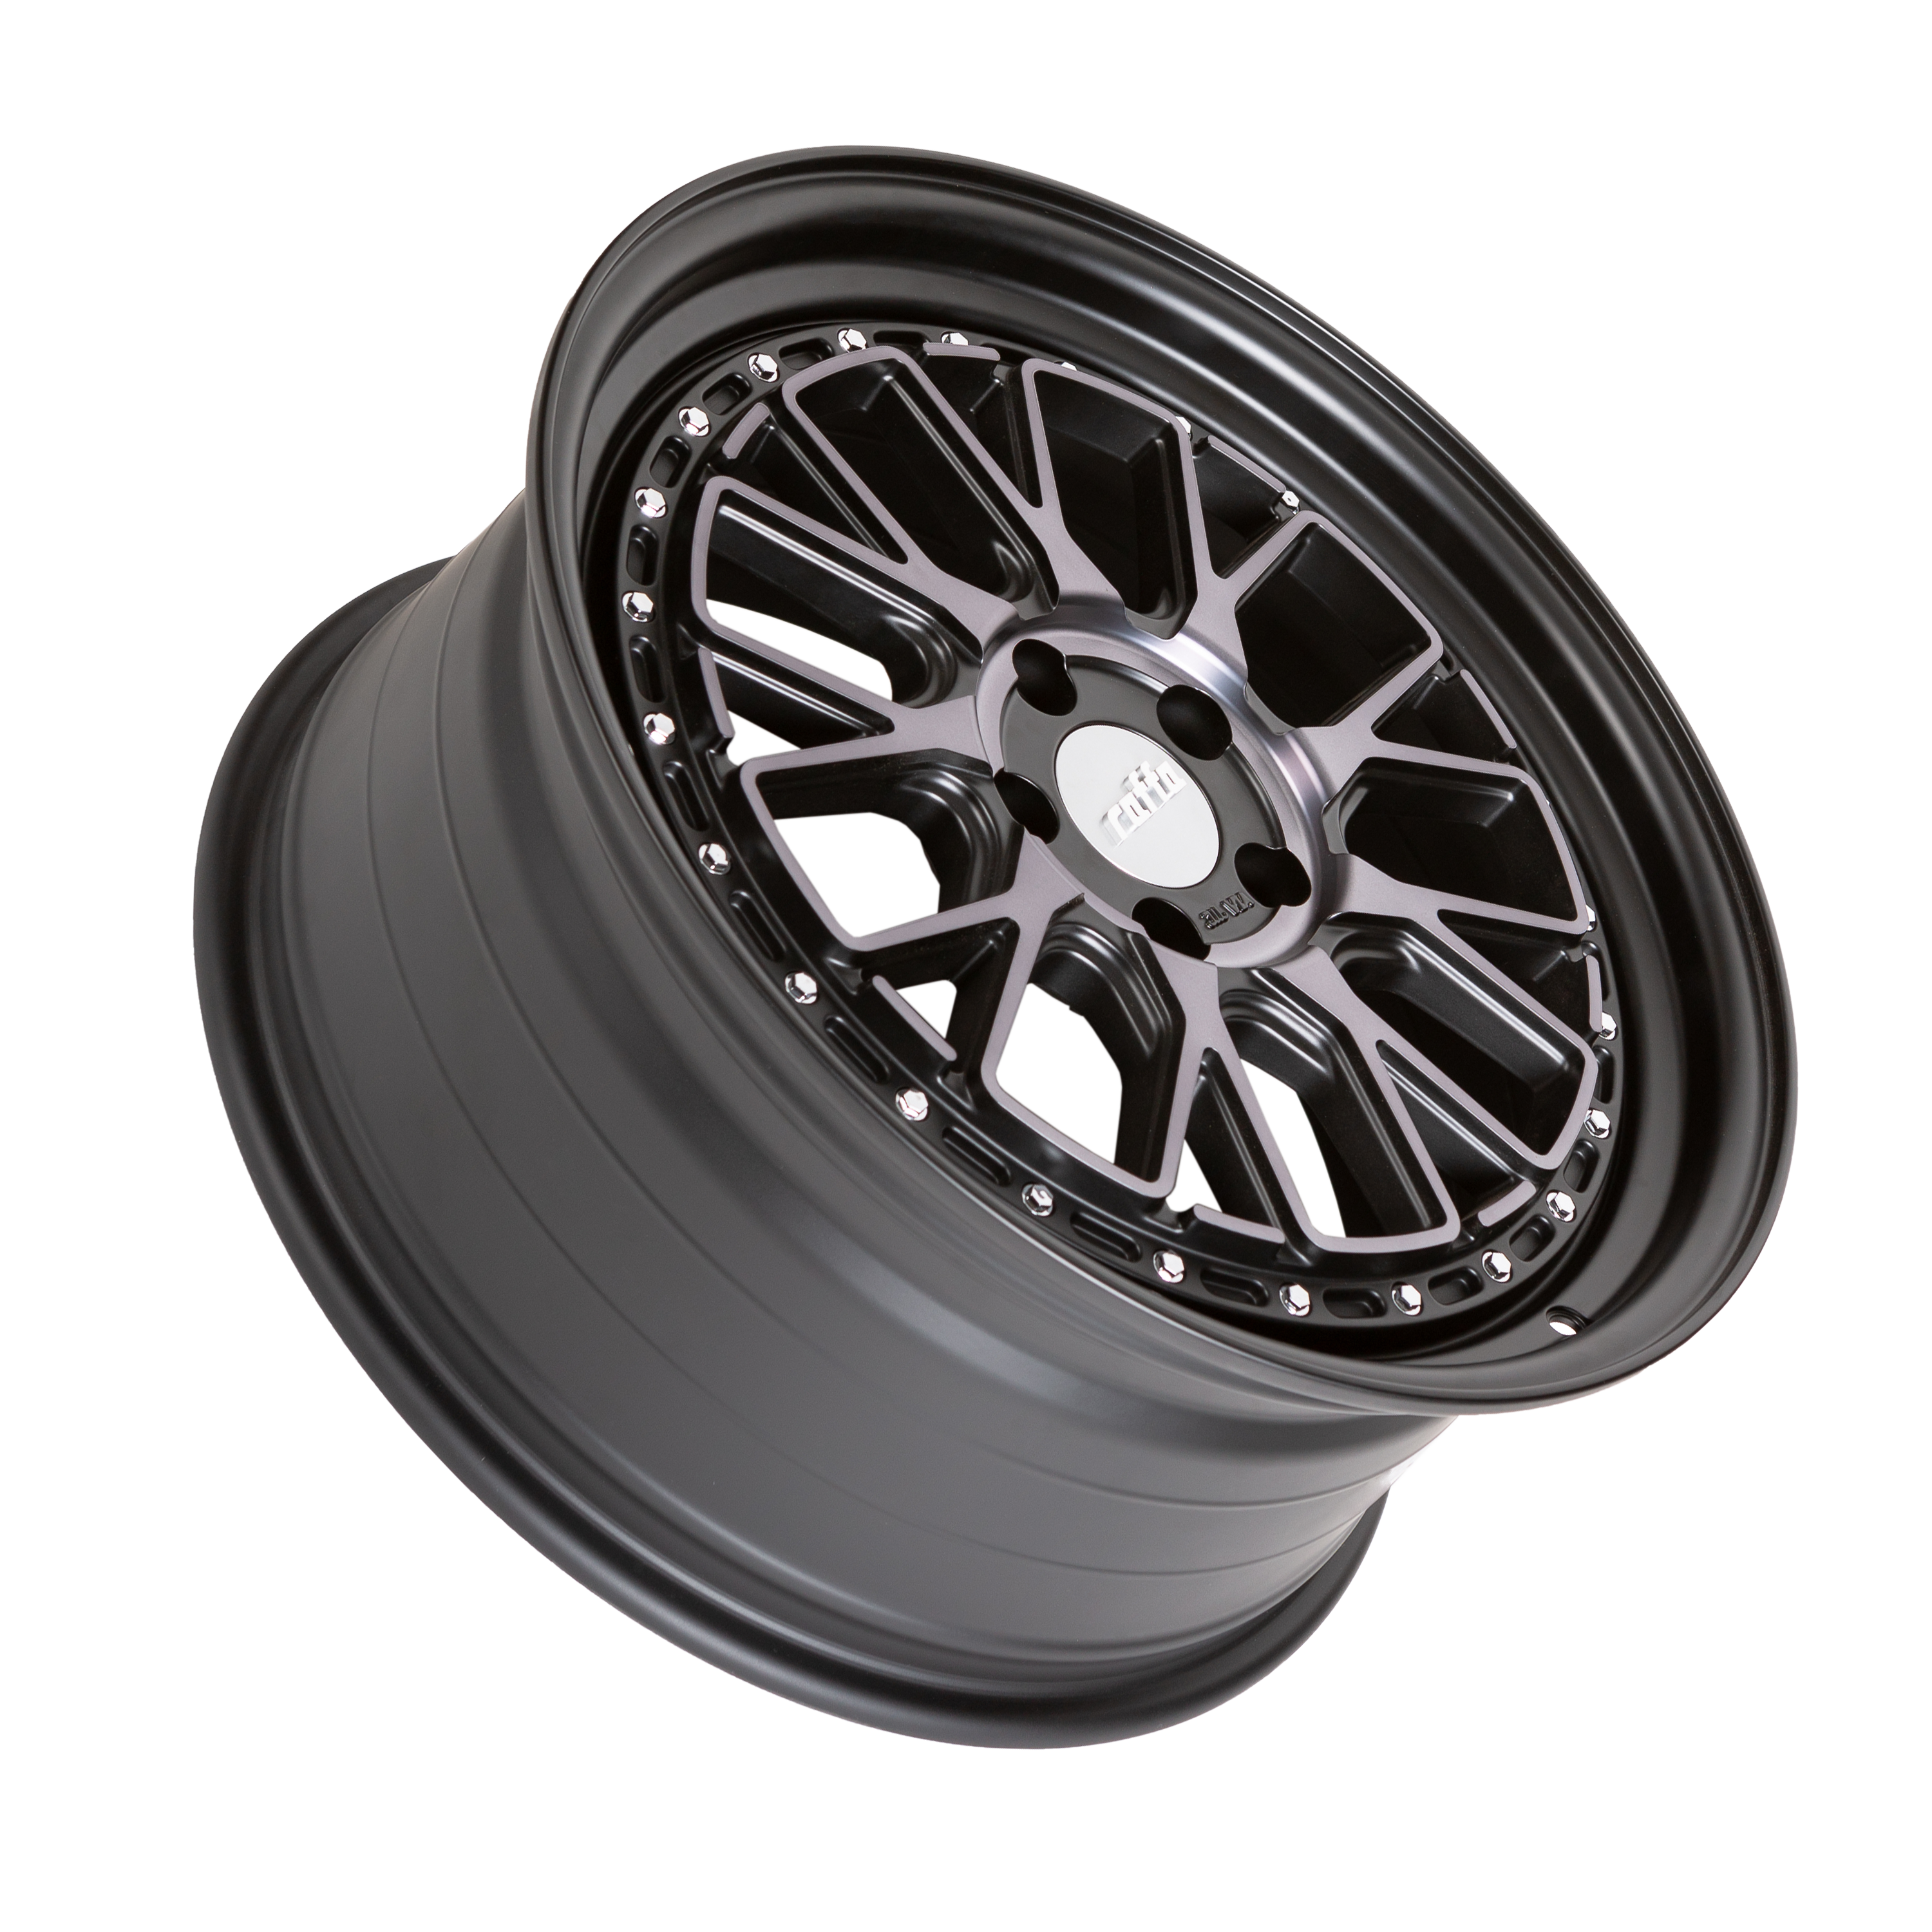 Full carbon clincher wheelset 700C en v logo full carbon wheels 60mm 3k